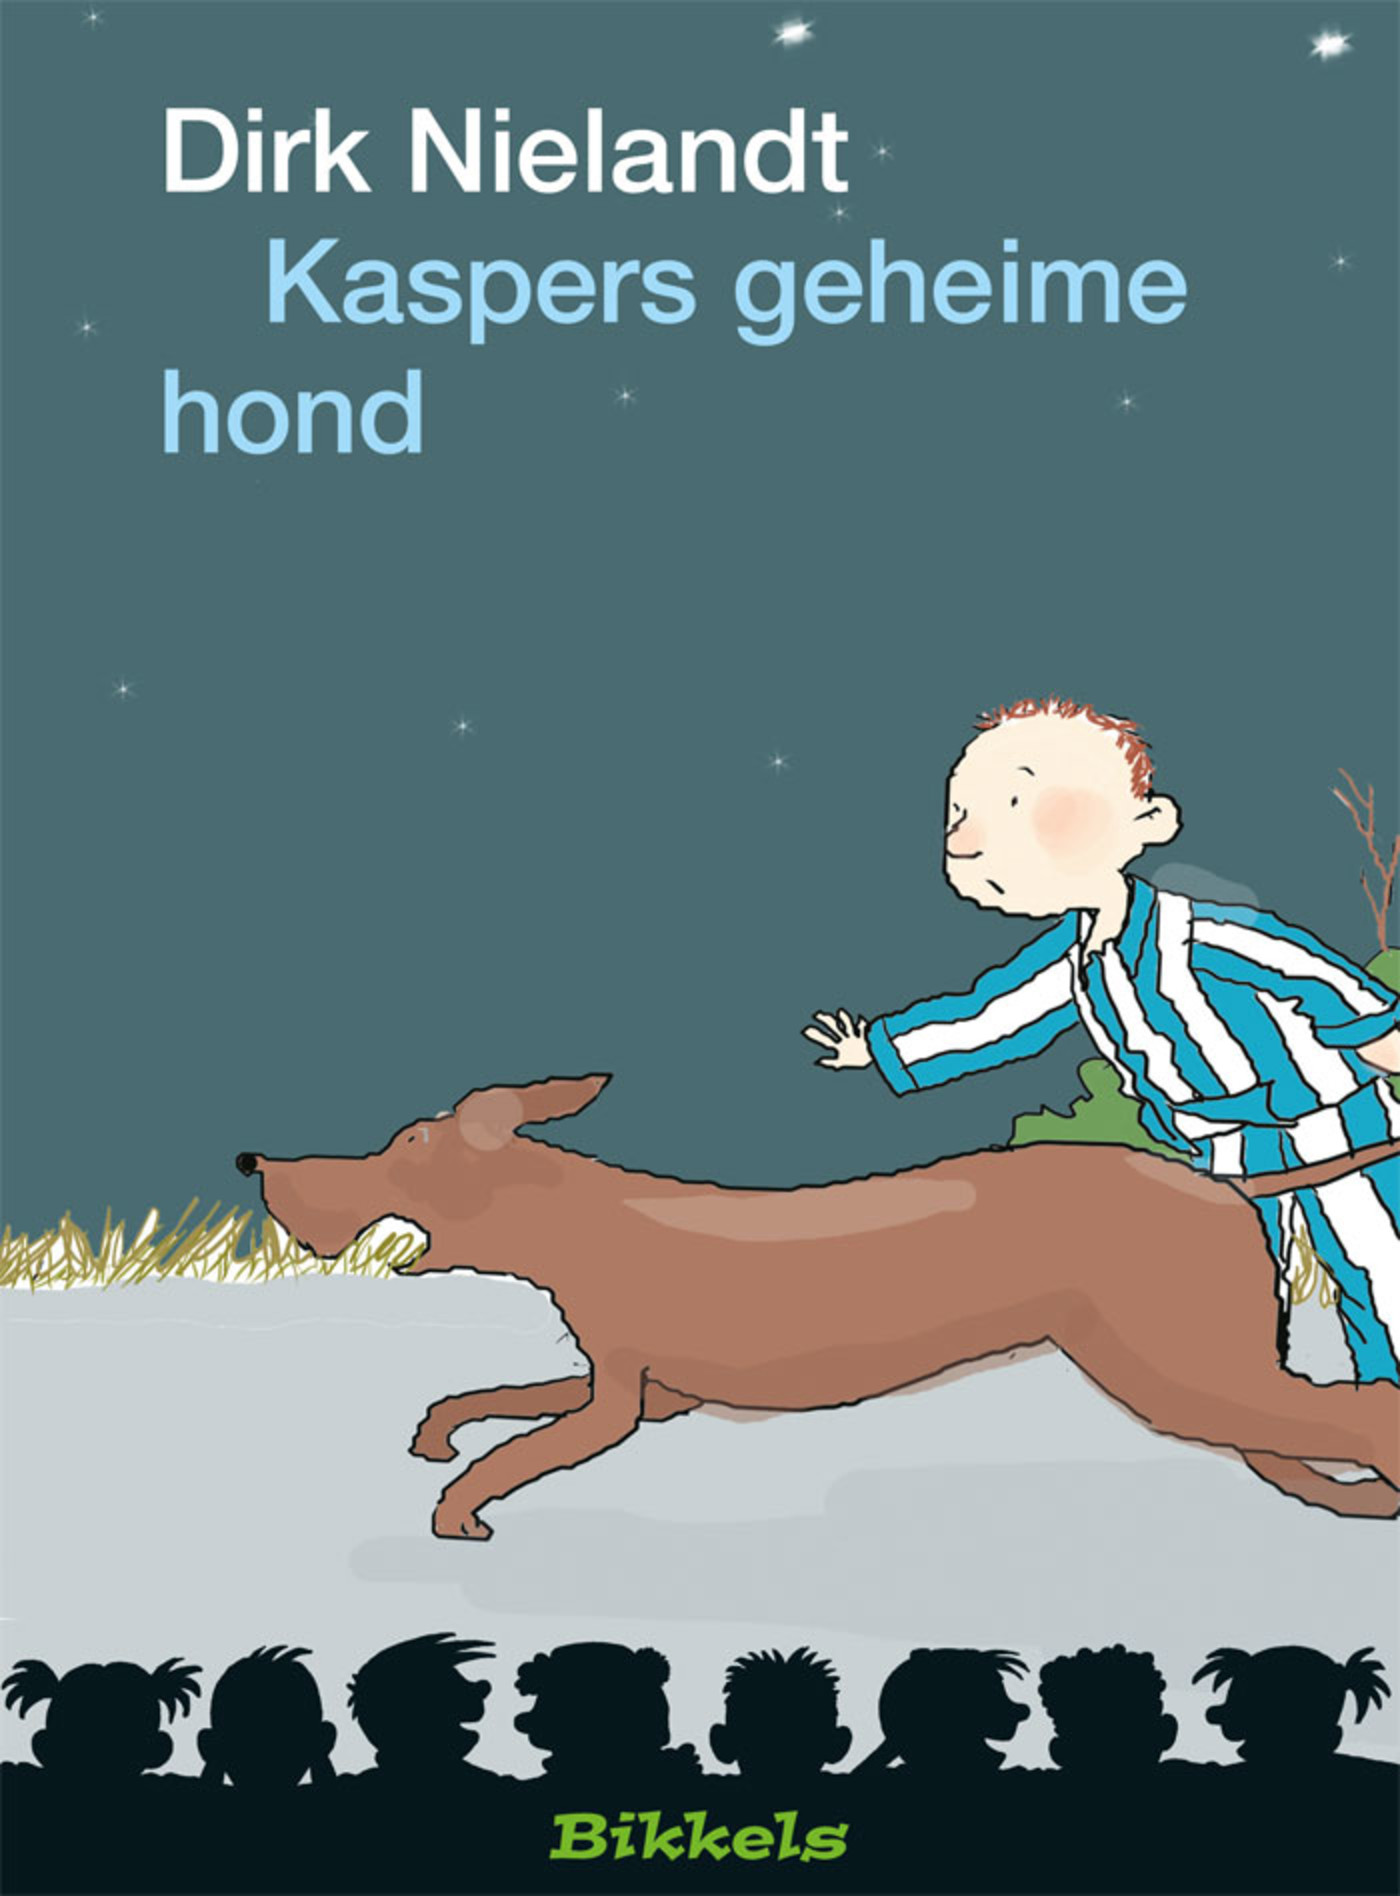 Kaspers geheime hond (Ebook)